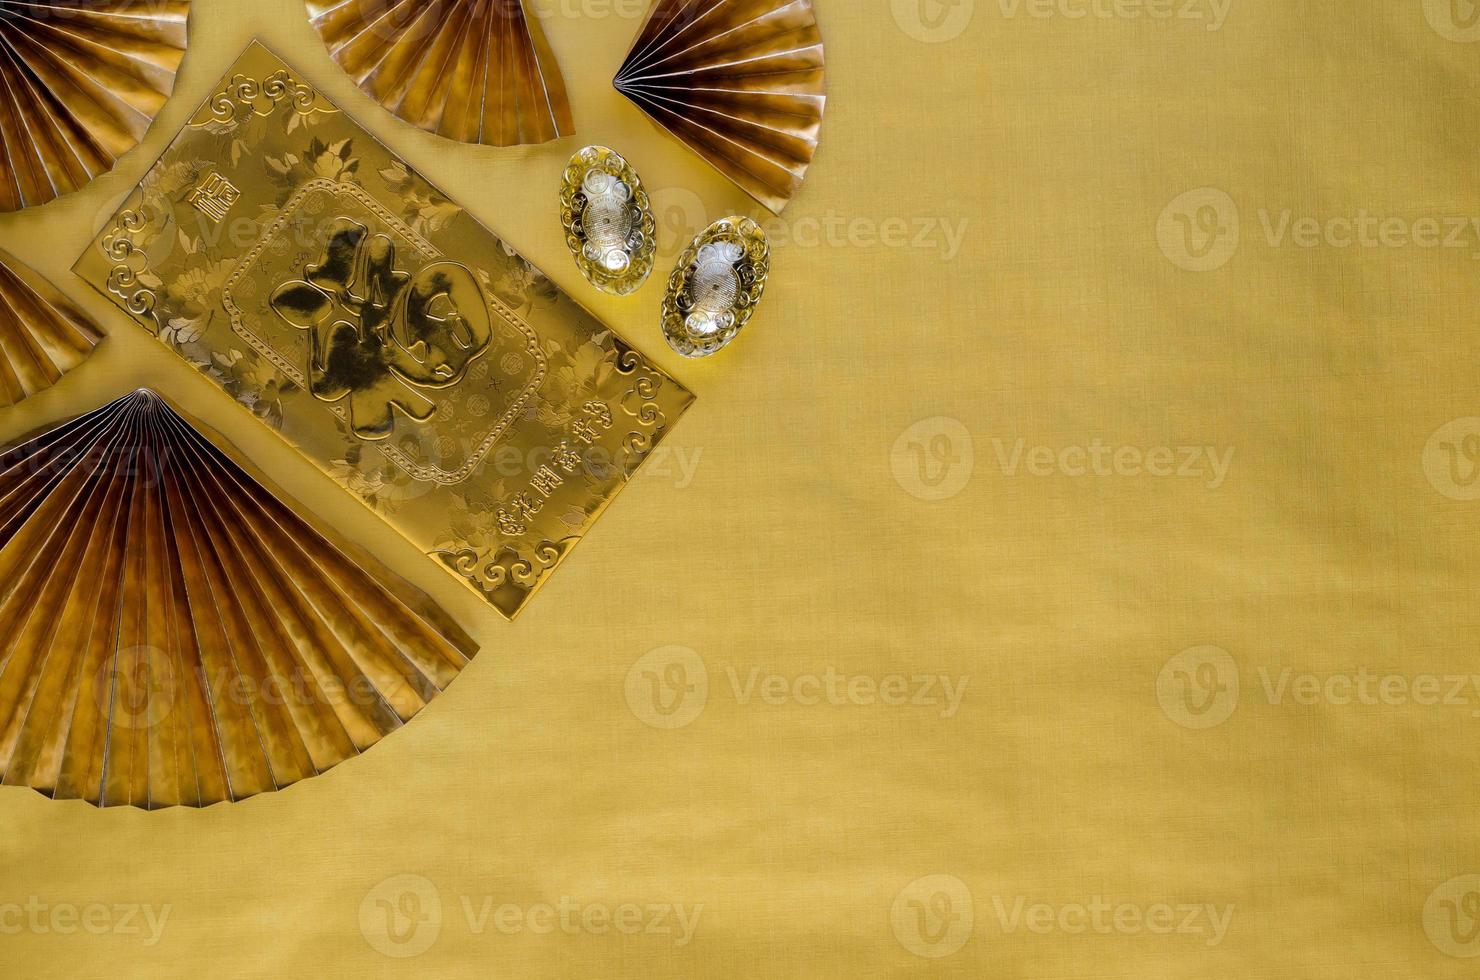 concepto de fondo de año nuevo chino con paquete de sobre de oro o palabra ang bao significa lingotes de riqueza y abanicos orientales rojos sobre fondo de espacio vacío de oro. foto